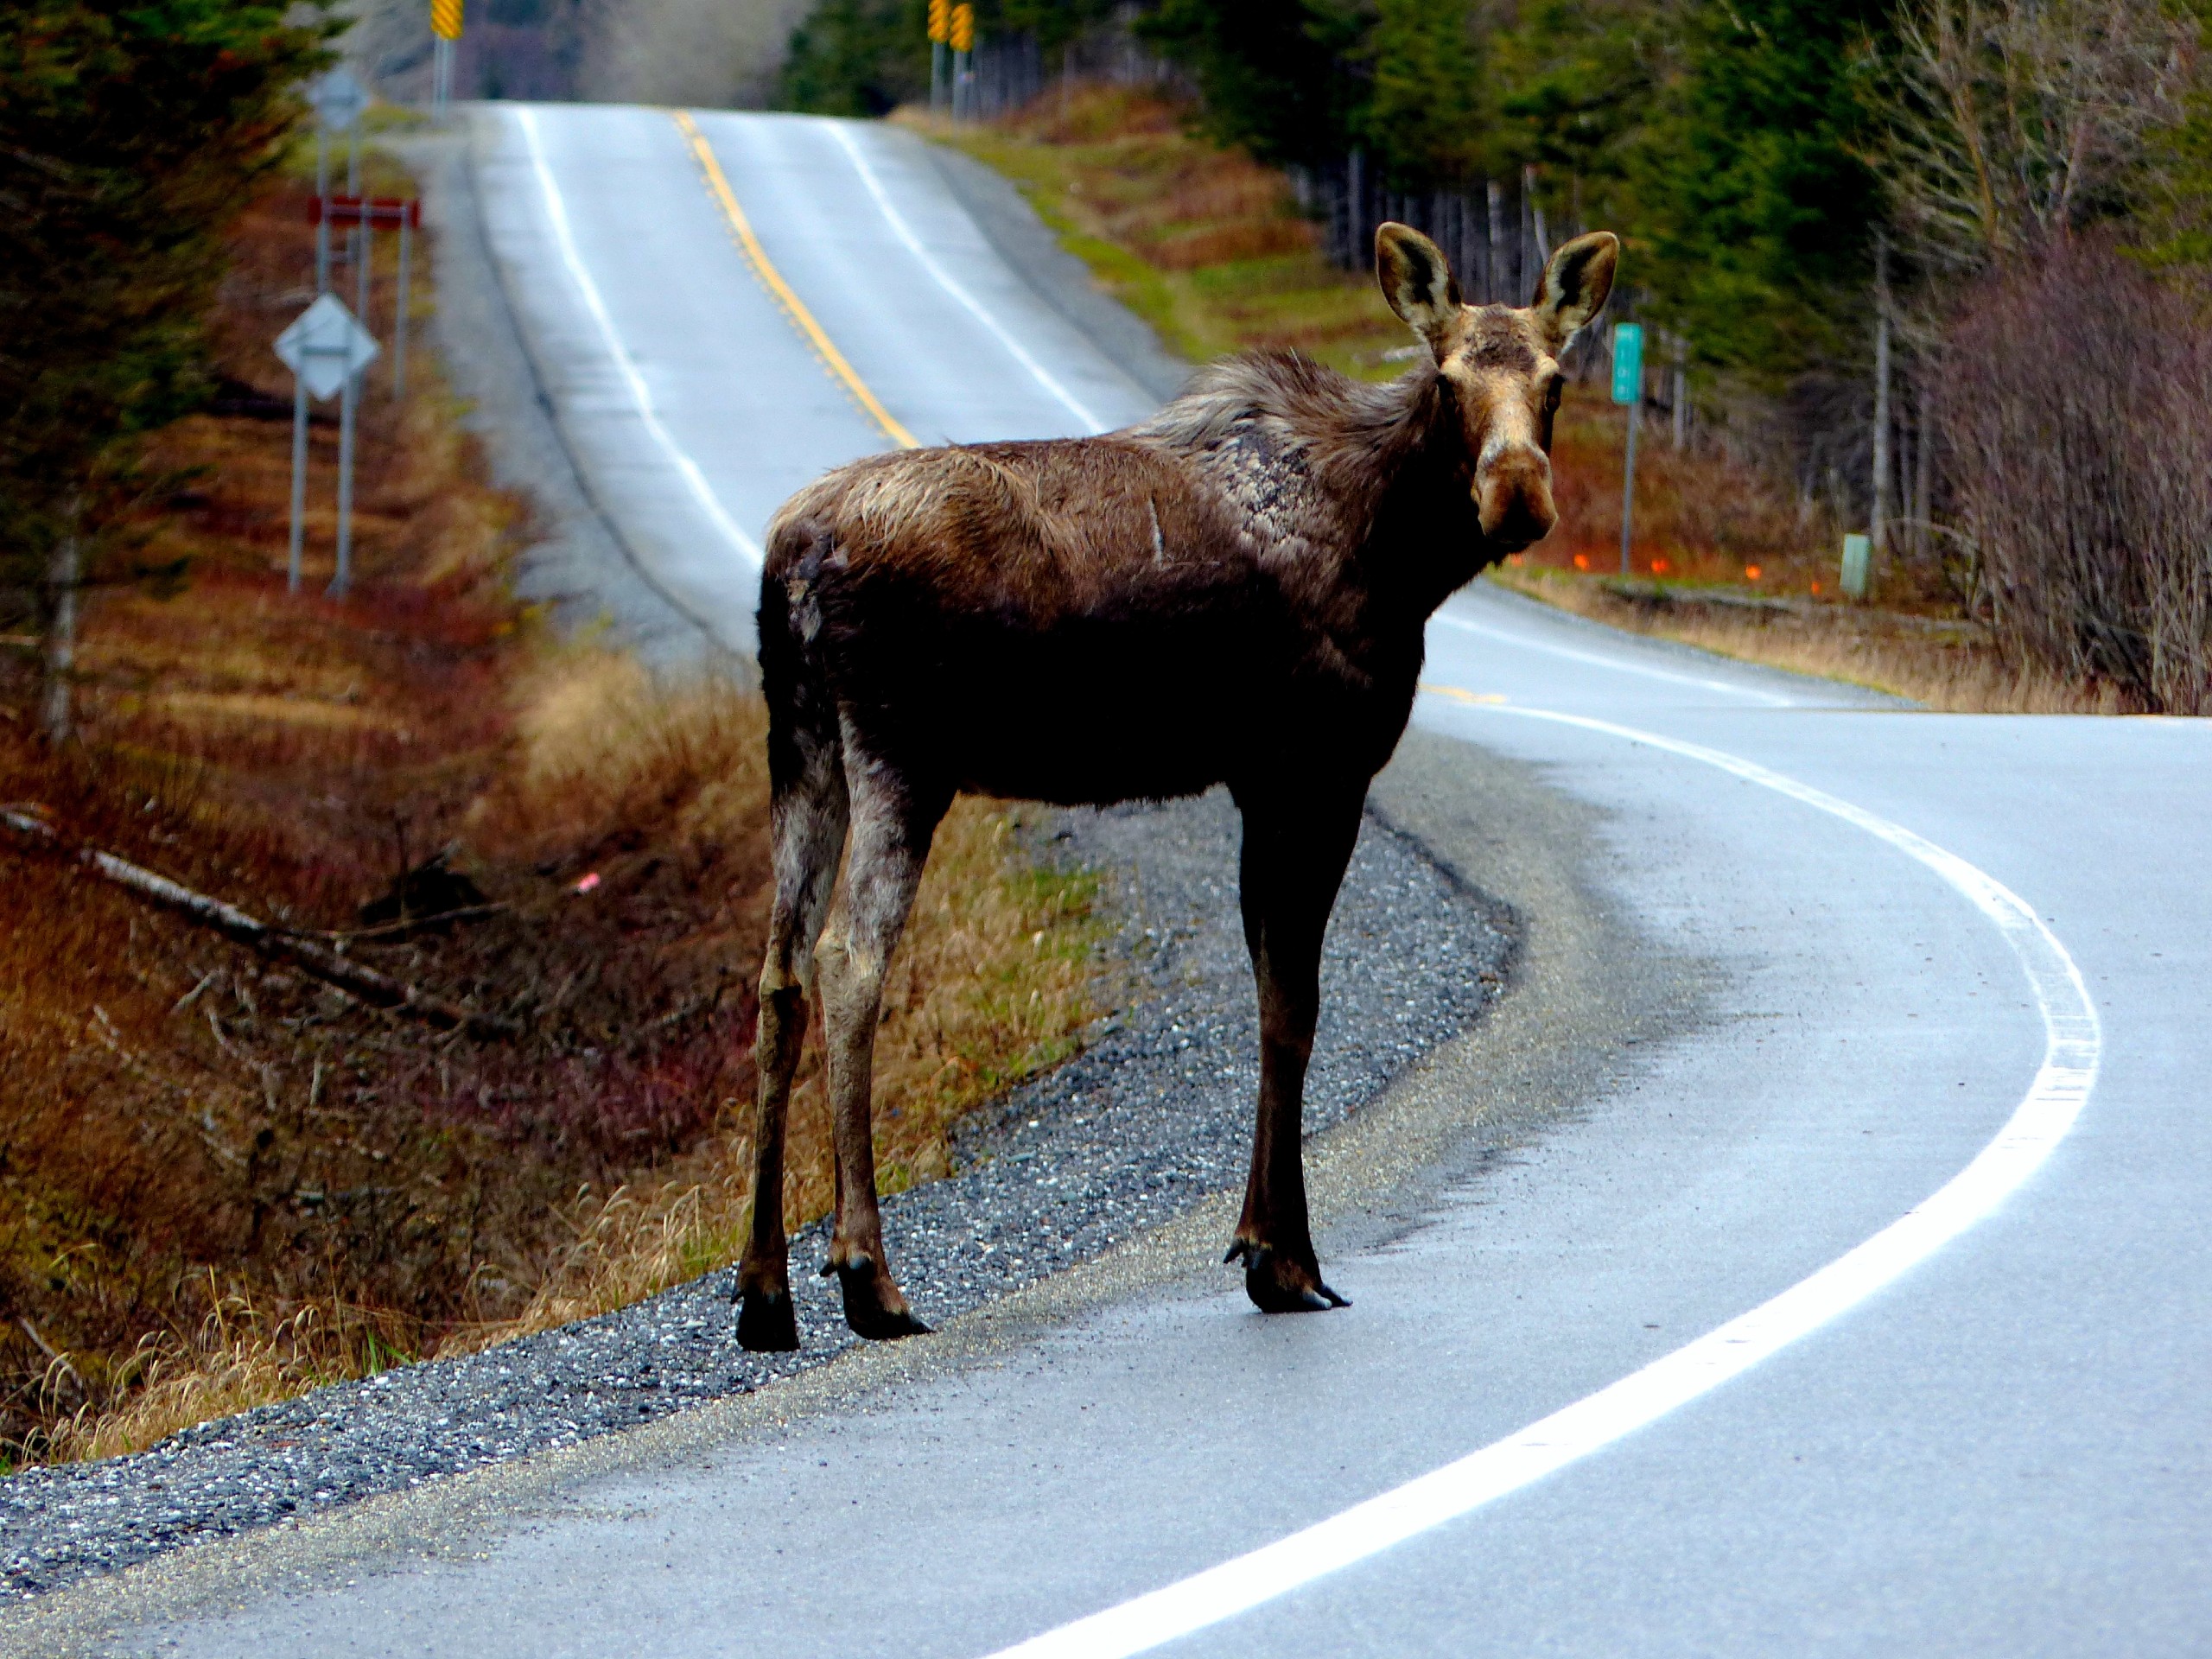 Moose met at Gaspésie National Park